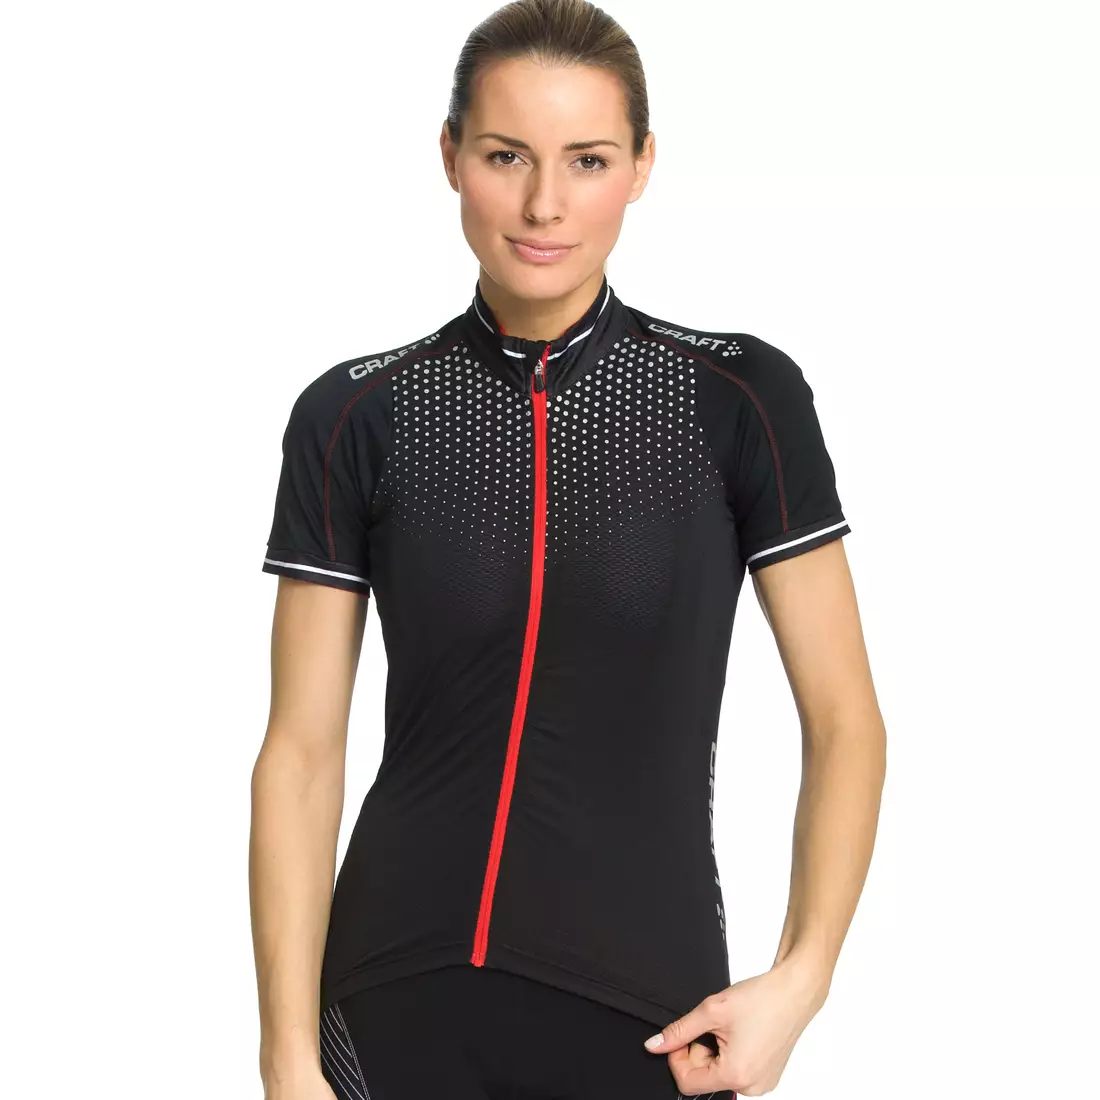 CRAFT GLOW women's cycling jersey 1903265-9430